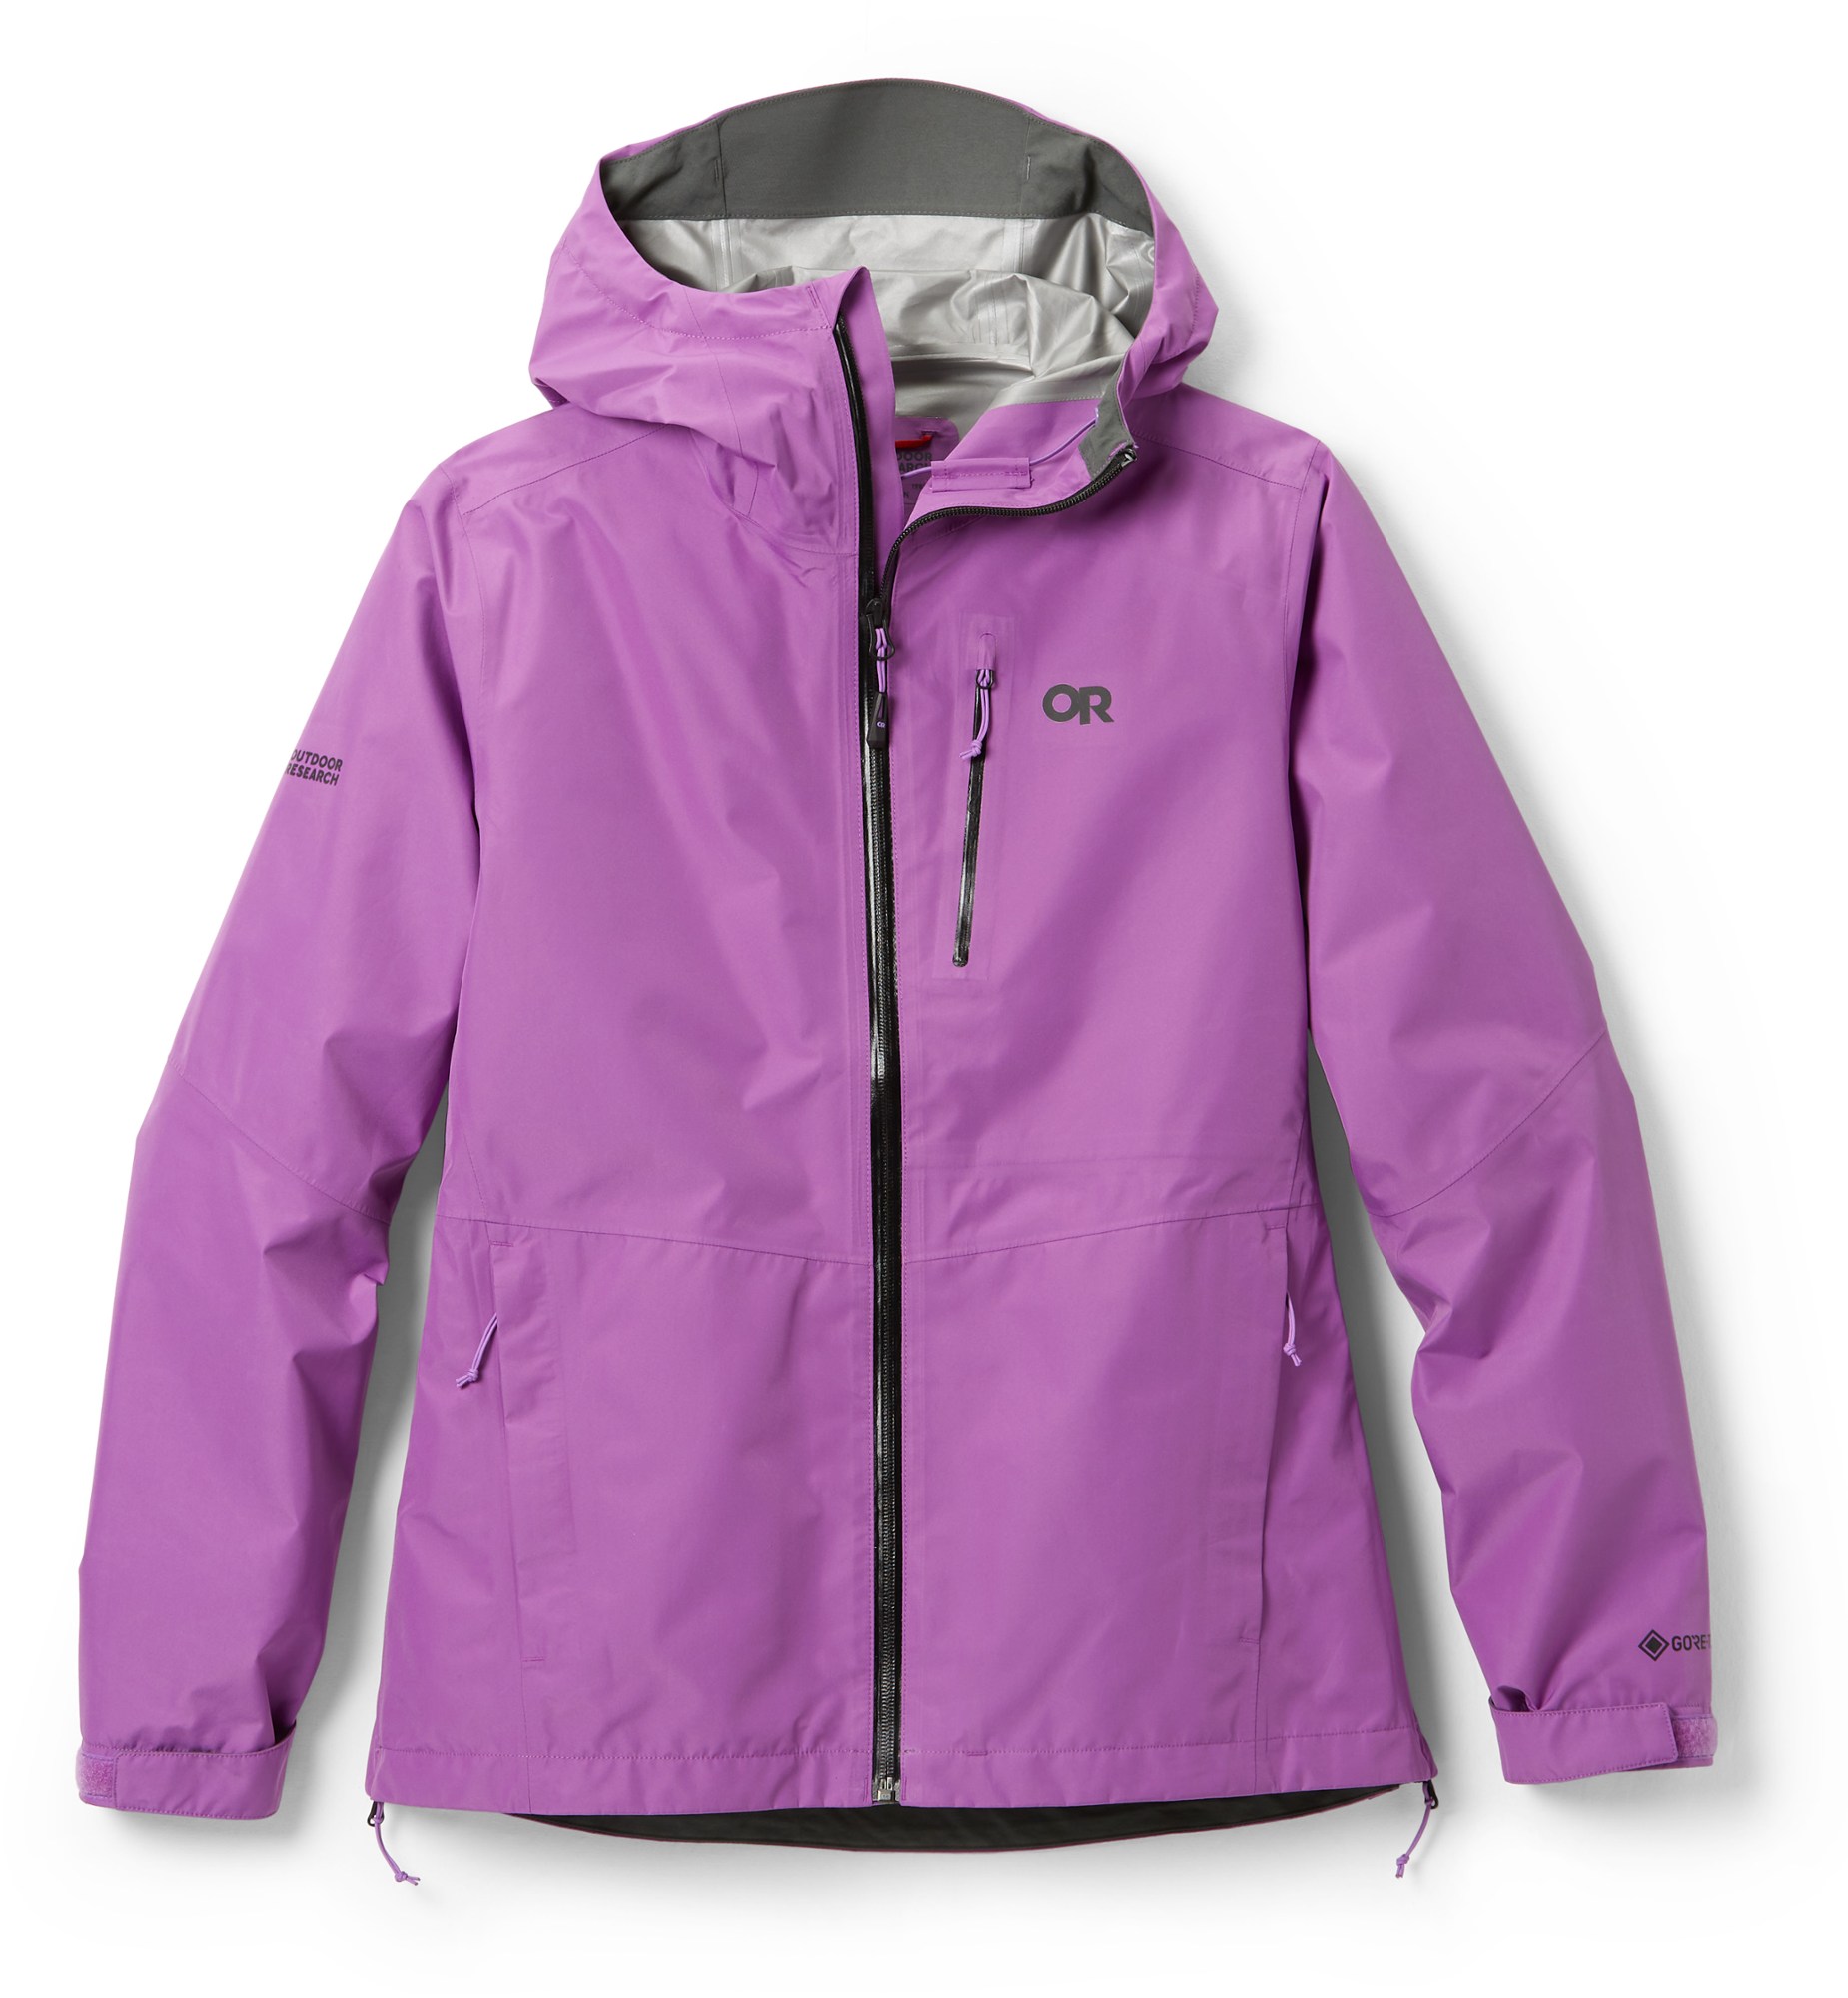 Outdoor Research Aspire II women's rain jacket